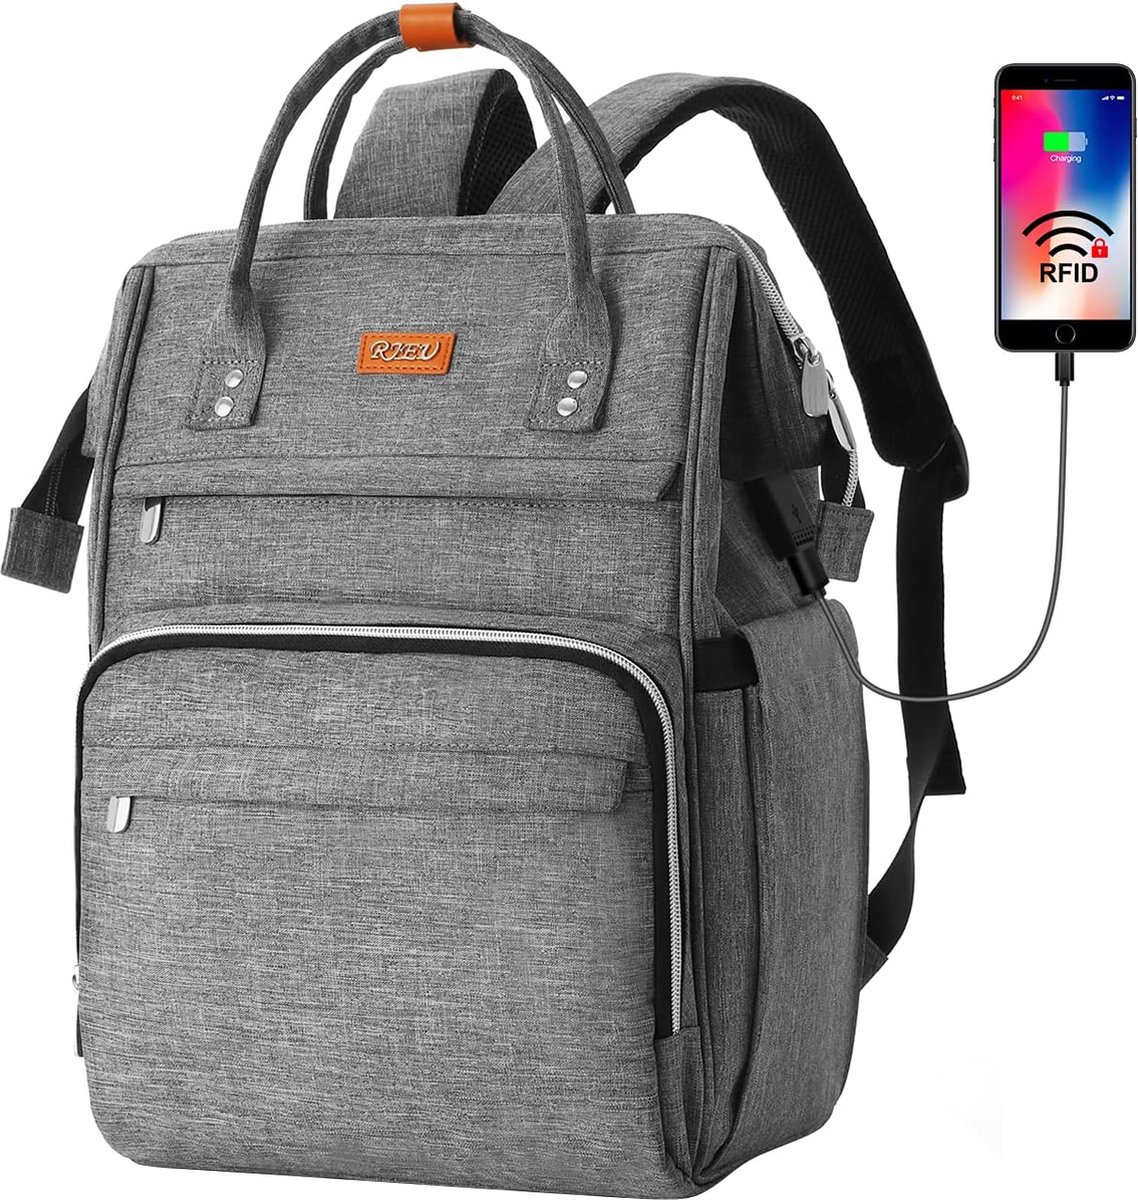 Rugzak met USB-poort - Grijs - 15.6 inch laptoptas - Voor school, werk, reizen - Rugtas met veel opbergruimte